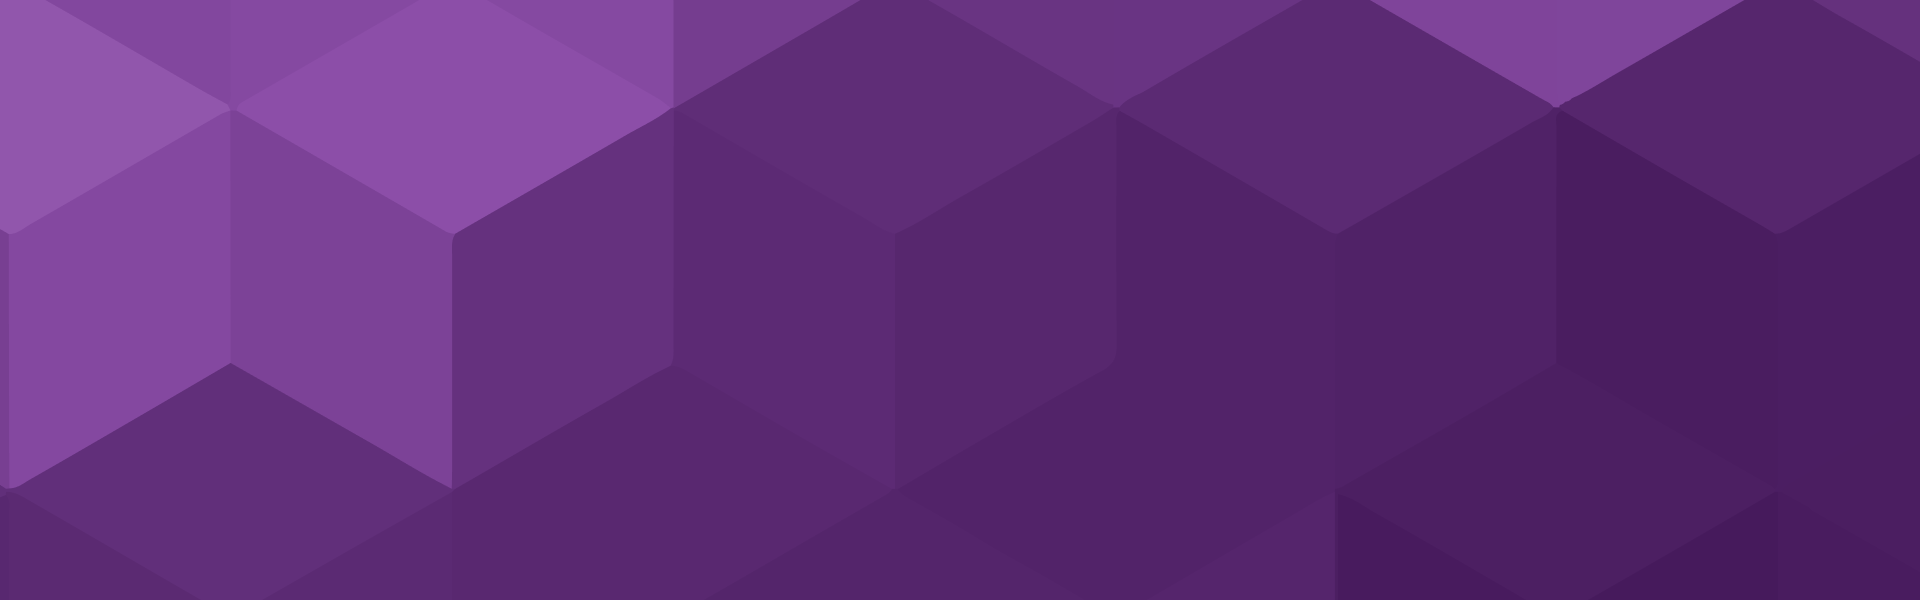 arrière-plan avec motif hexagonal violet